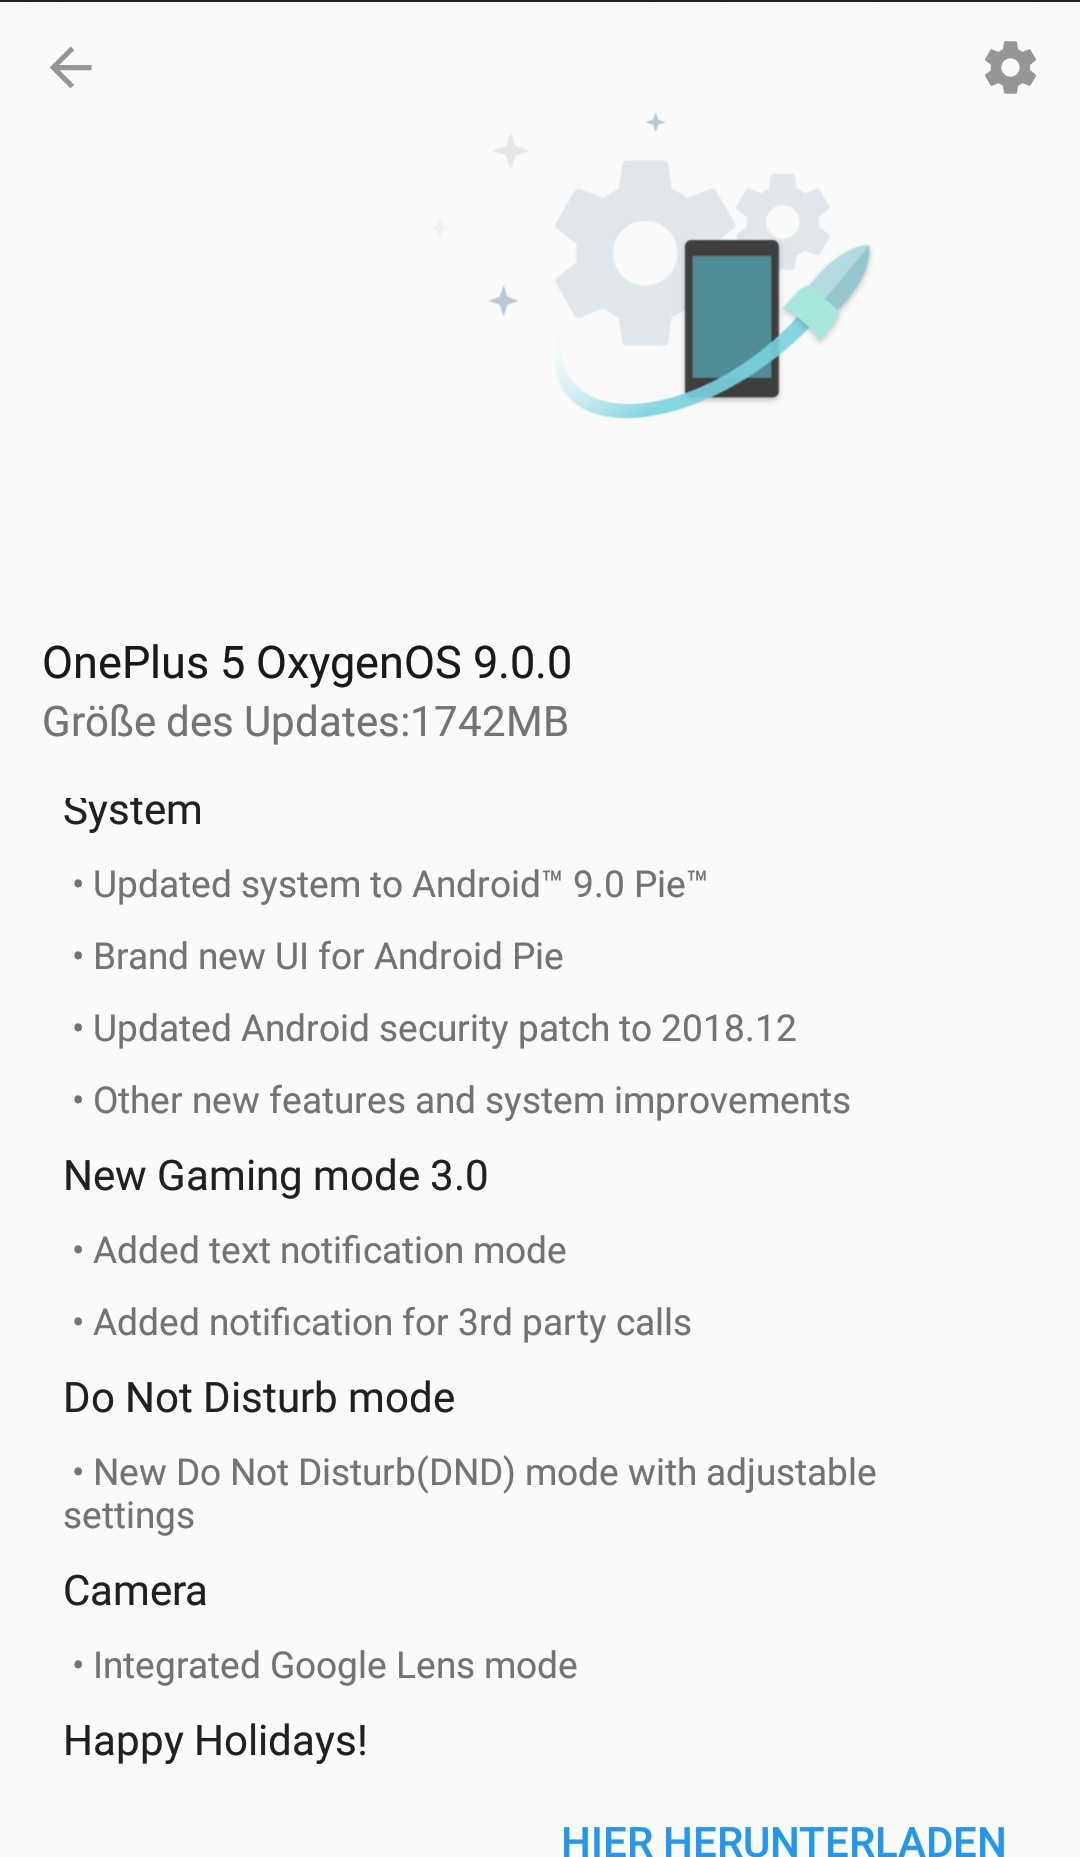 Oneplus 5 - OxygenOS 9.0.0